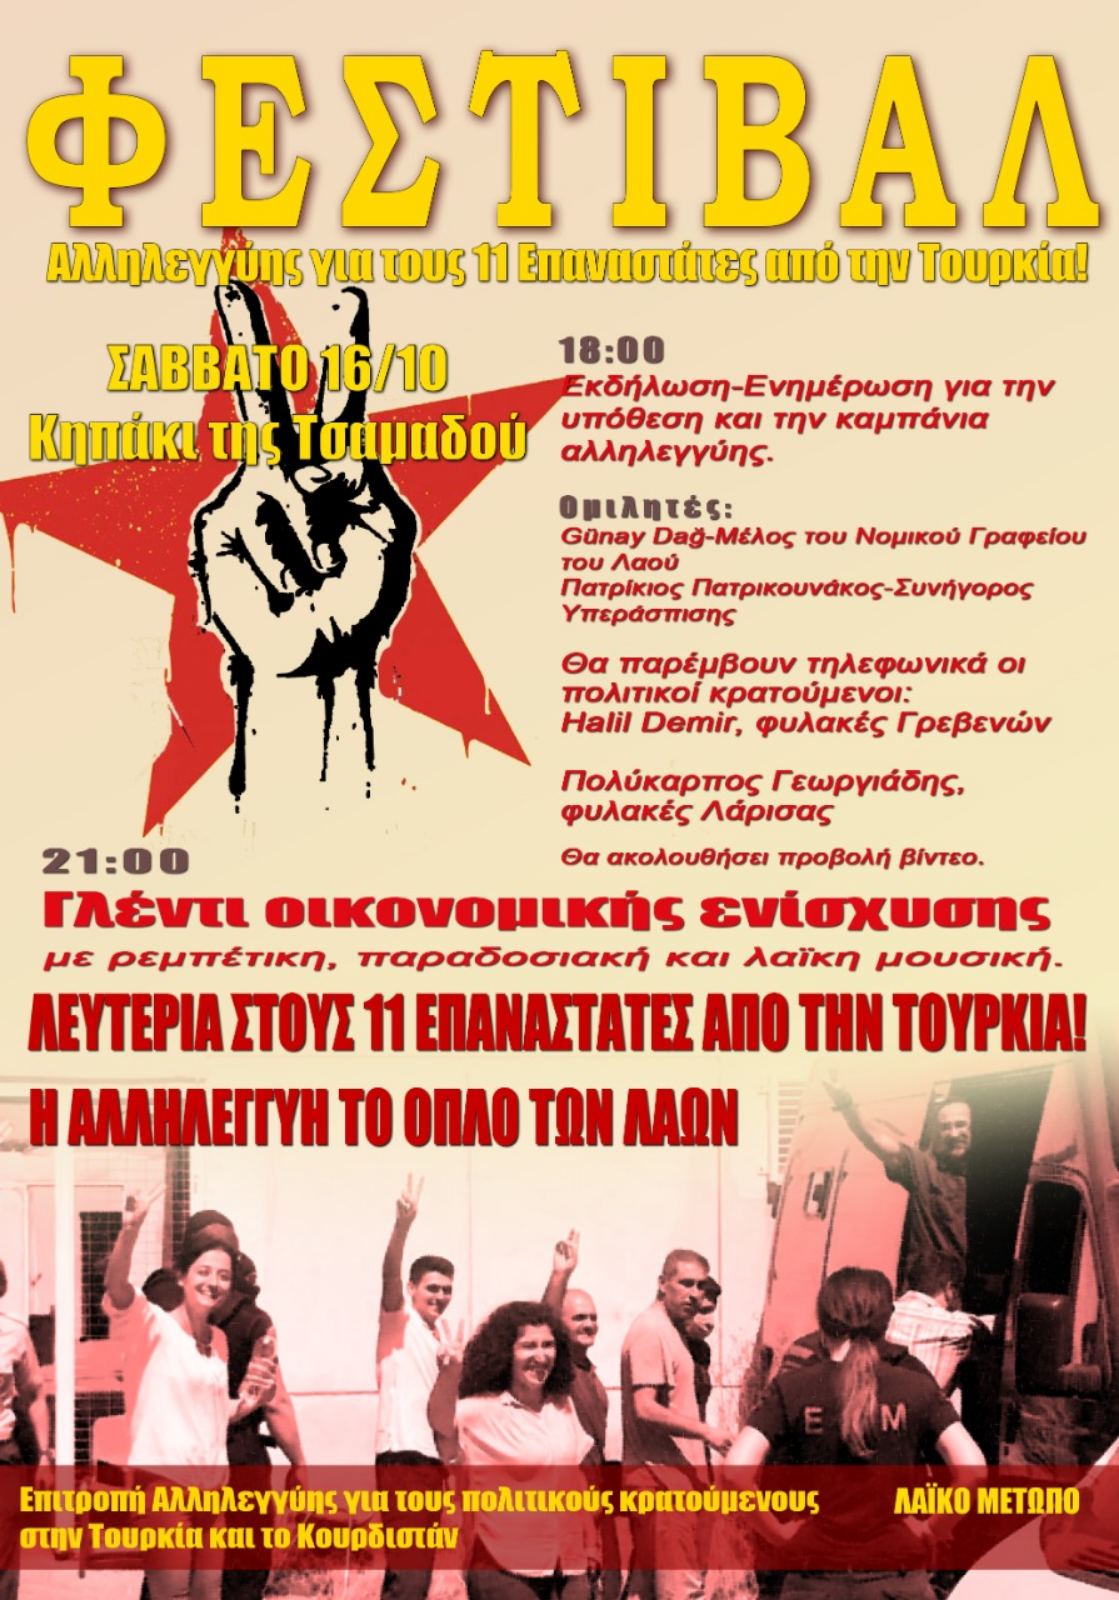 Φεστιβάλ αλληλεγγύης για τους 11 επαναστάτες από την Τουρκία, Σάββατο 16/10, Κηπάκι της Τσαμαδού